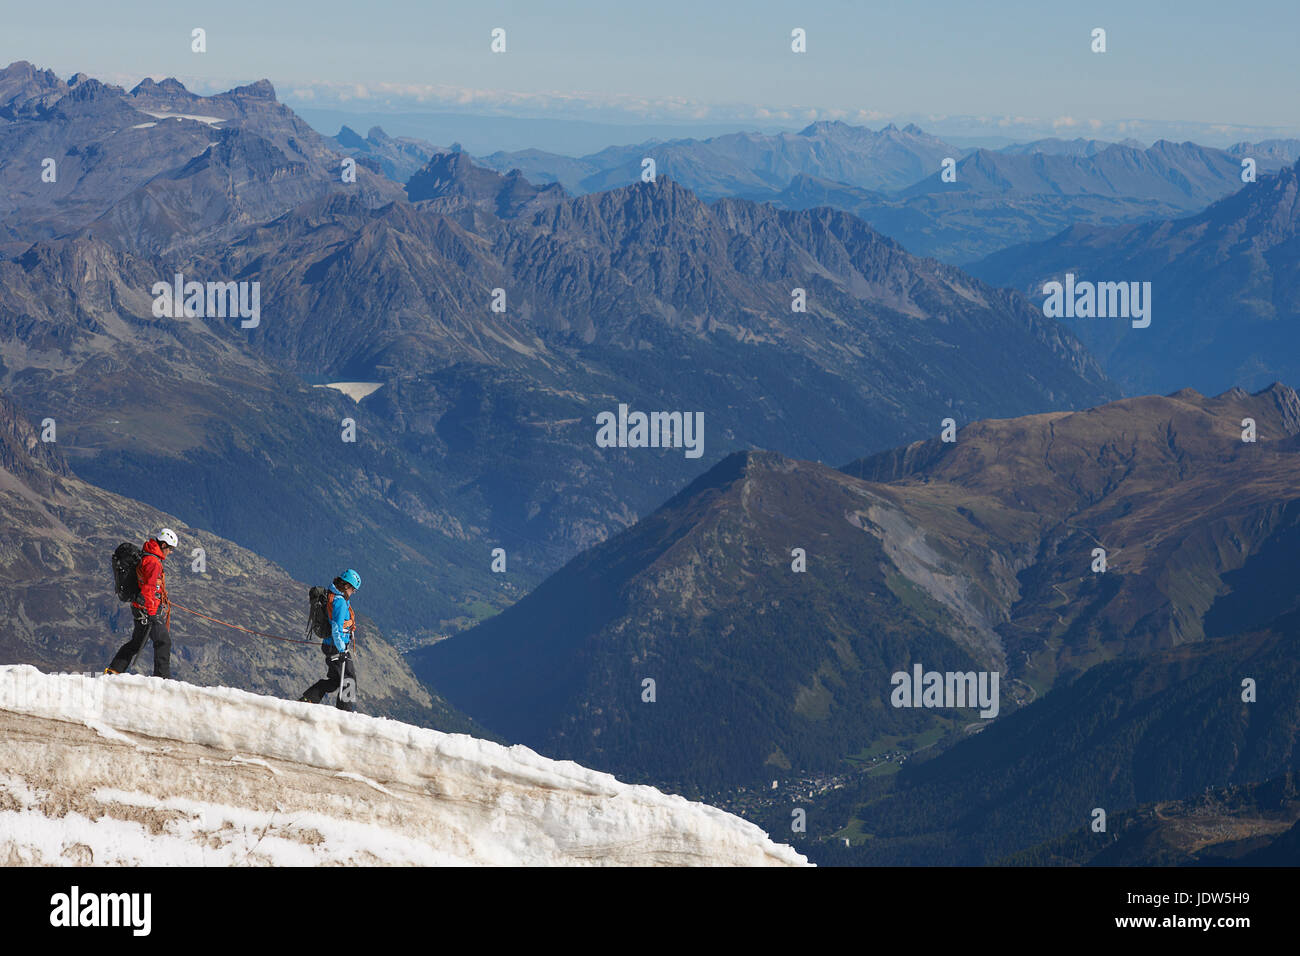 Mountaineers on mountain, Chamonix, Haute Savoie, France Stock Photo